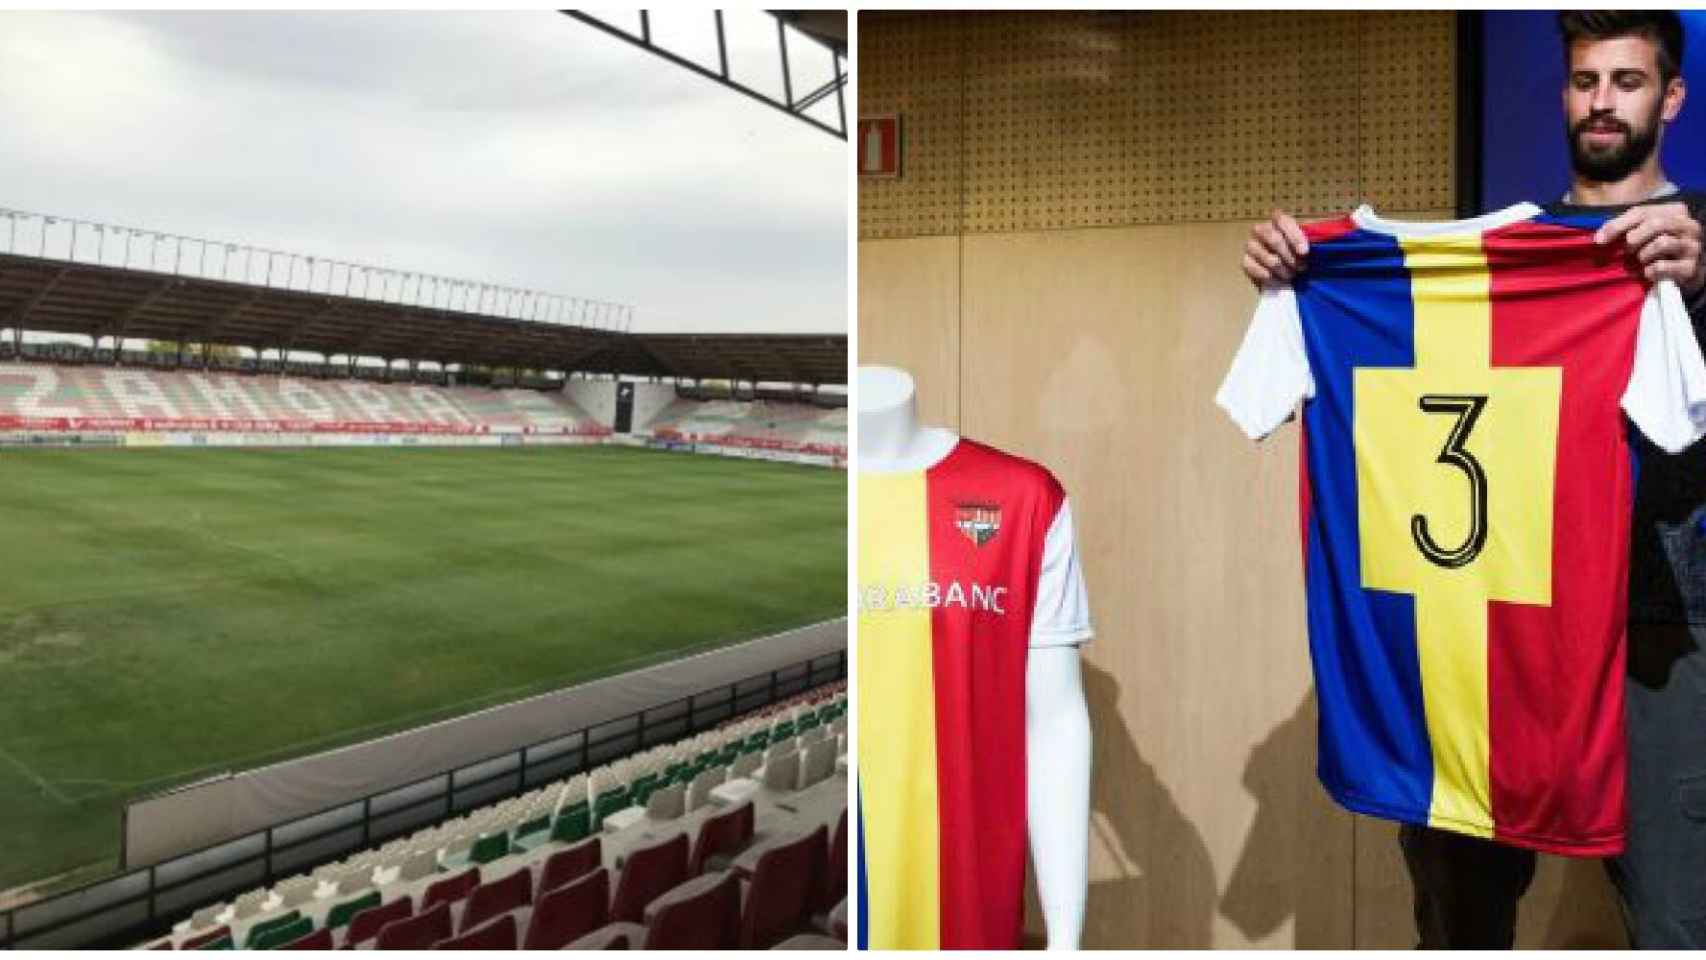 El campo del Zamora y Gerard Piqué con la camiseta del Andorra